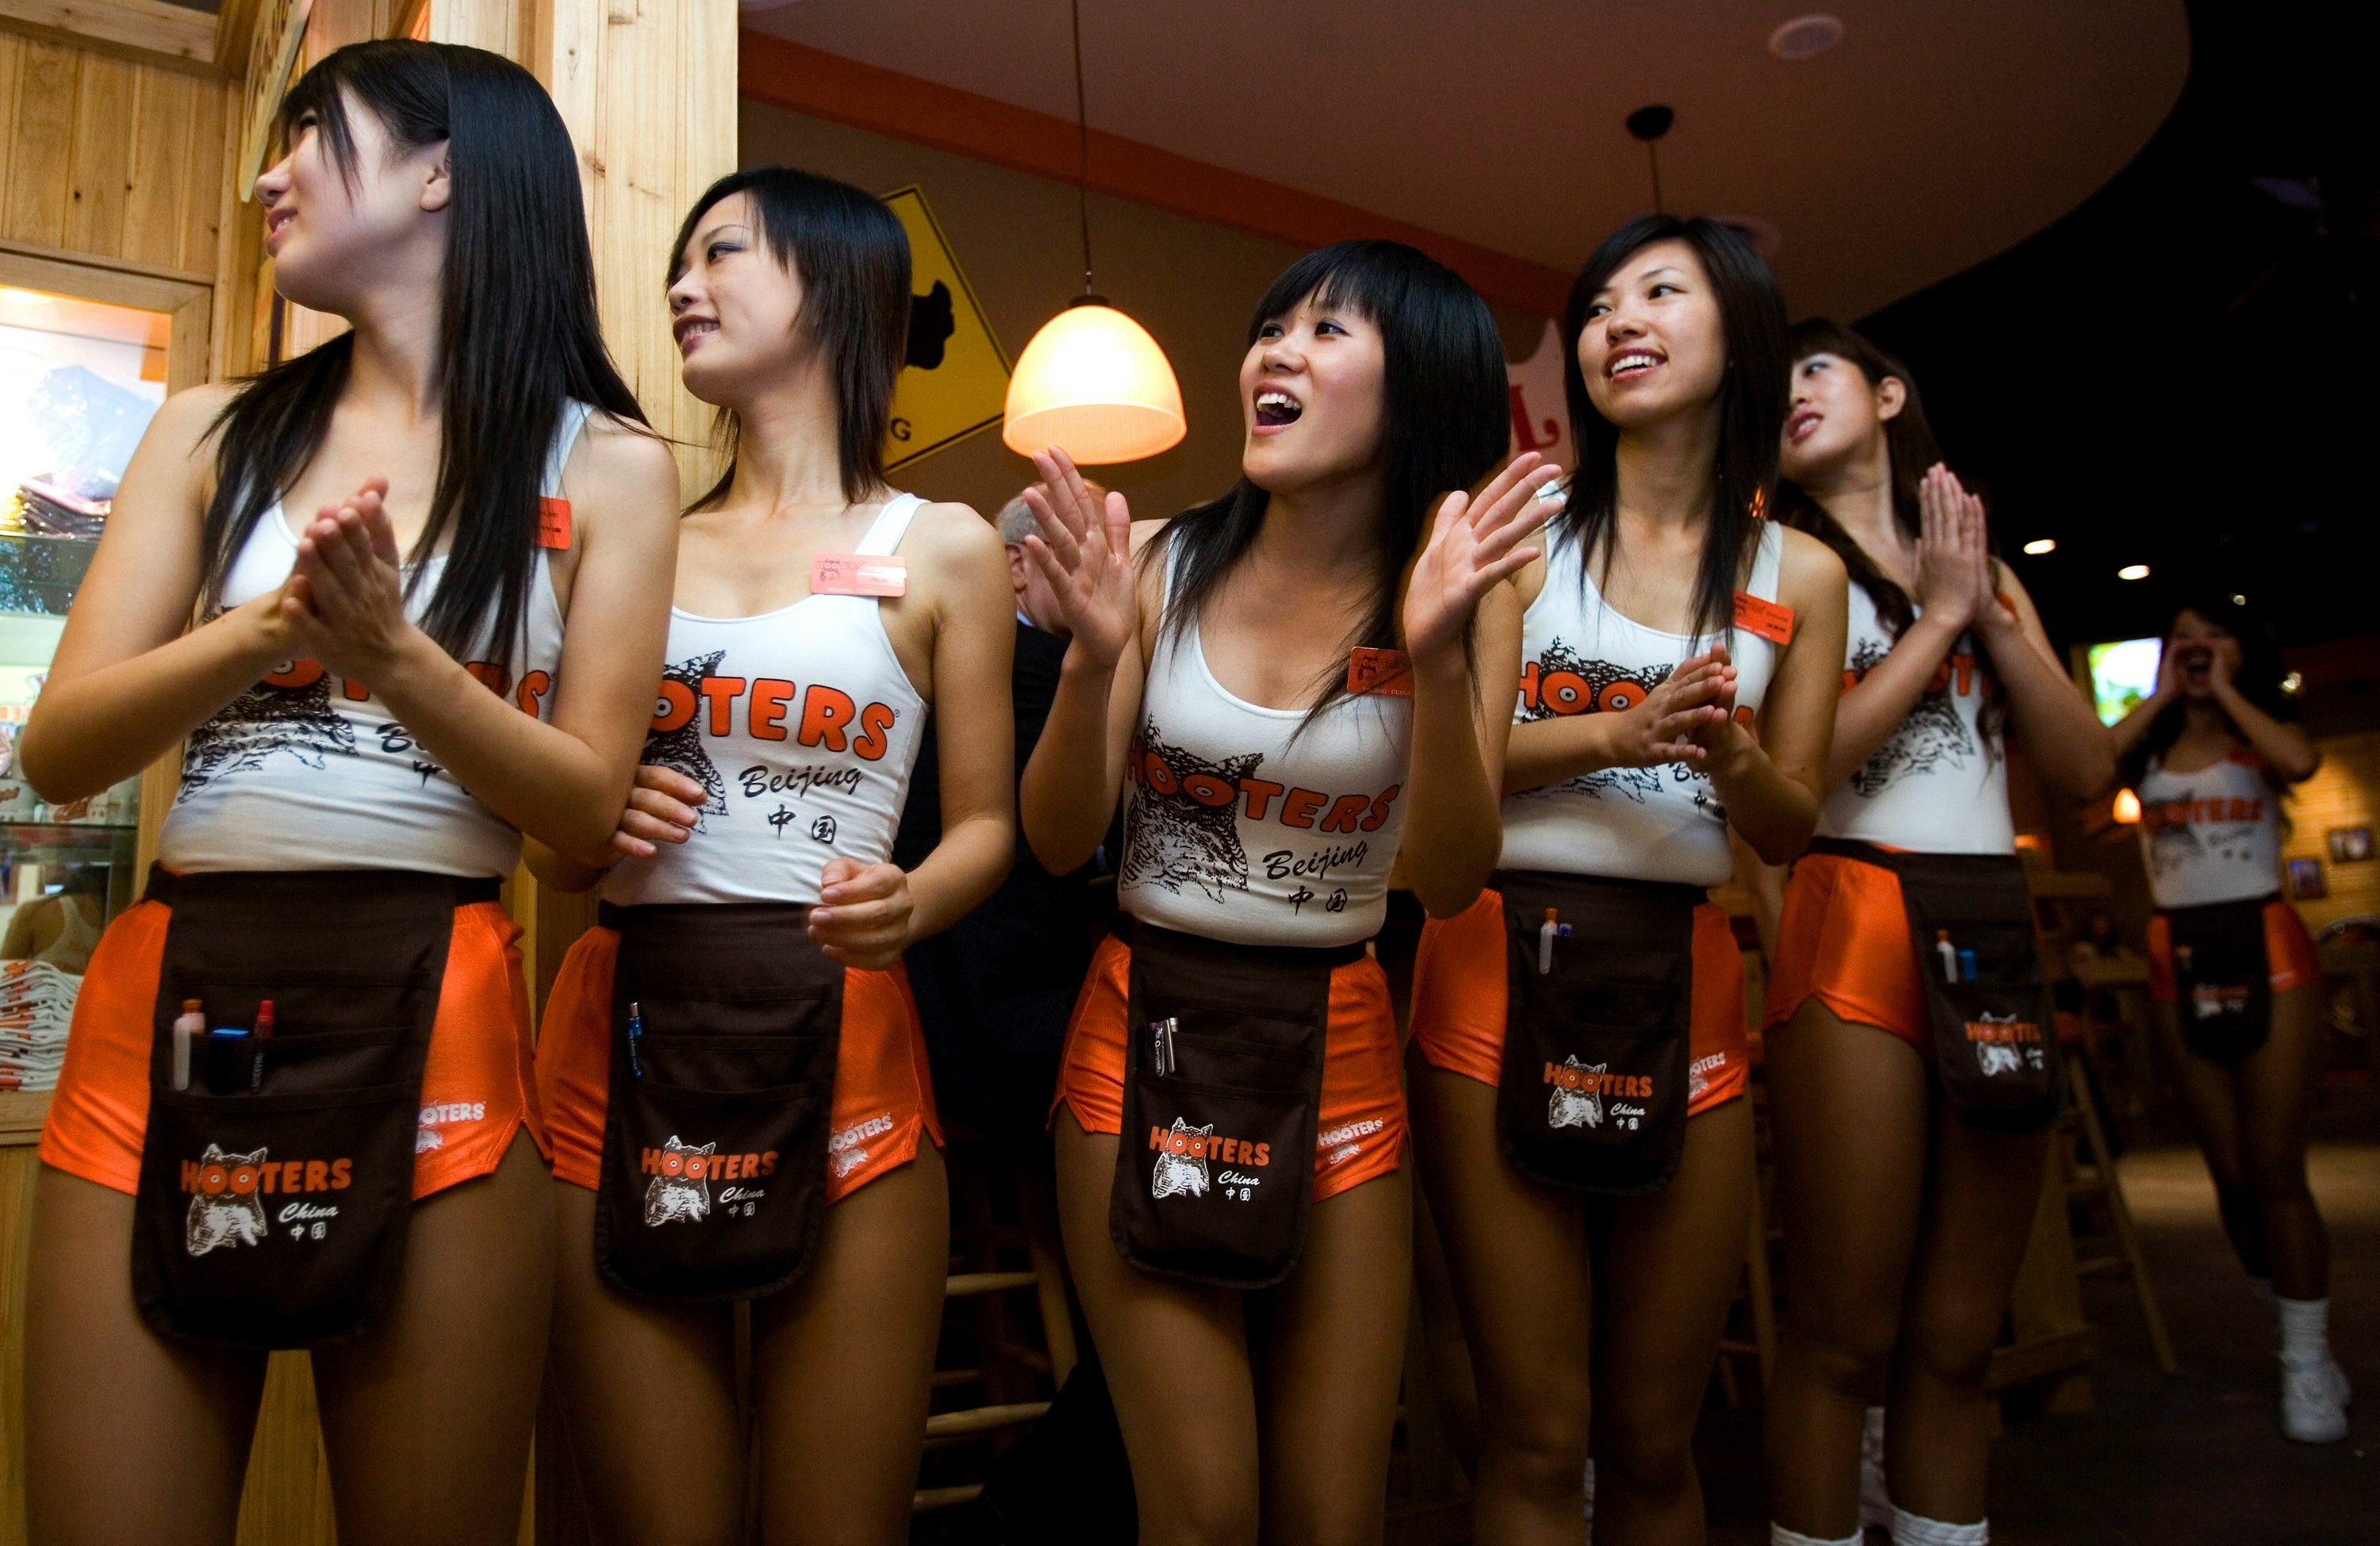 К грудастым китаянкам которые занимаются проституцией пришли очередные клиенты